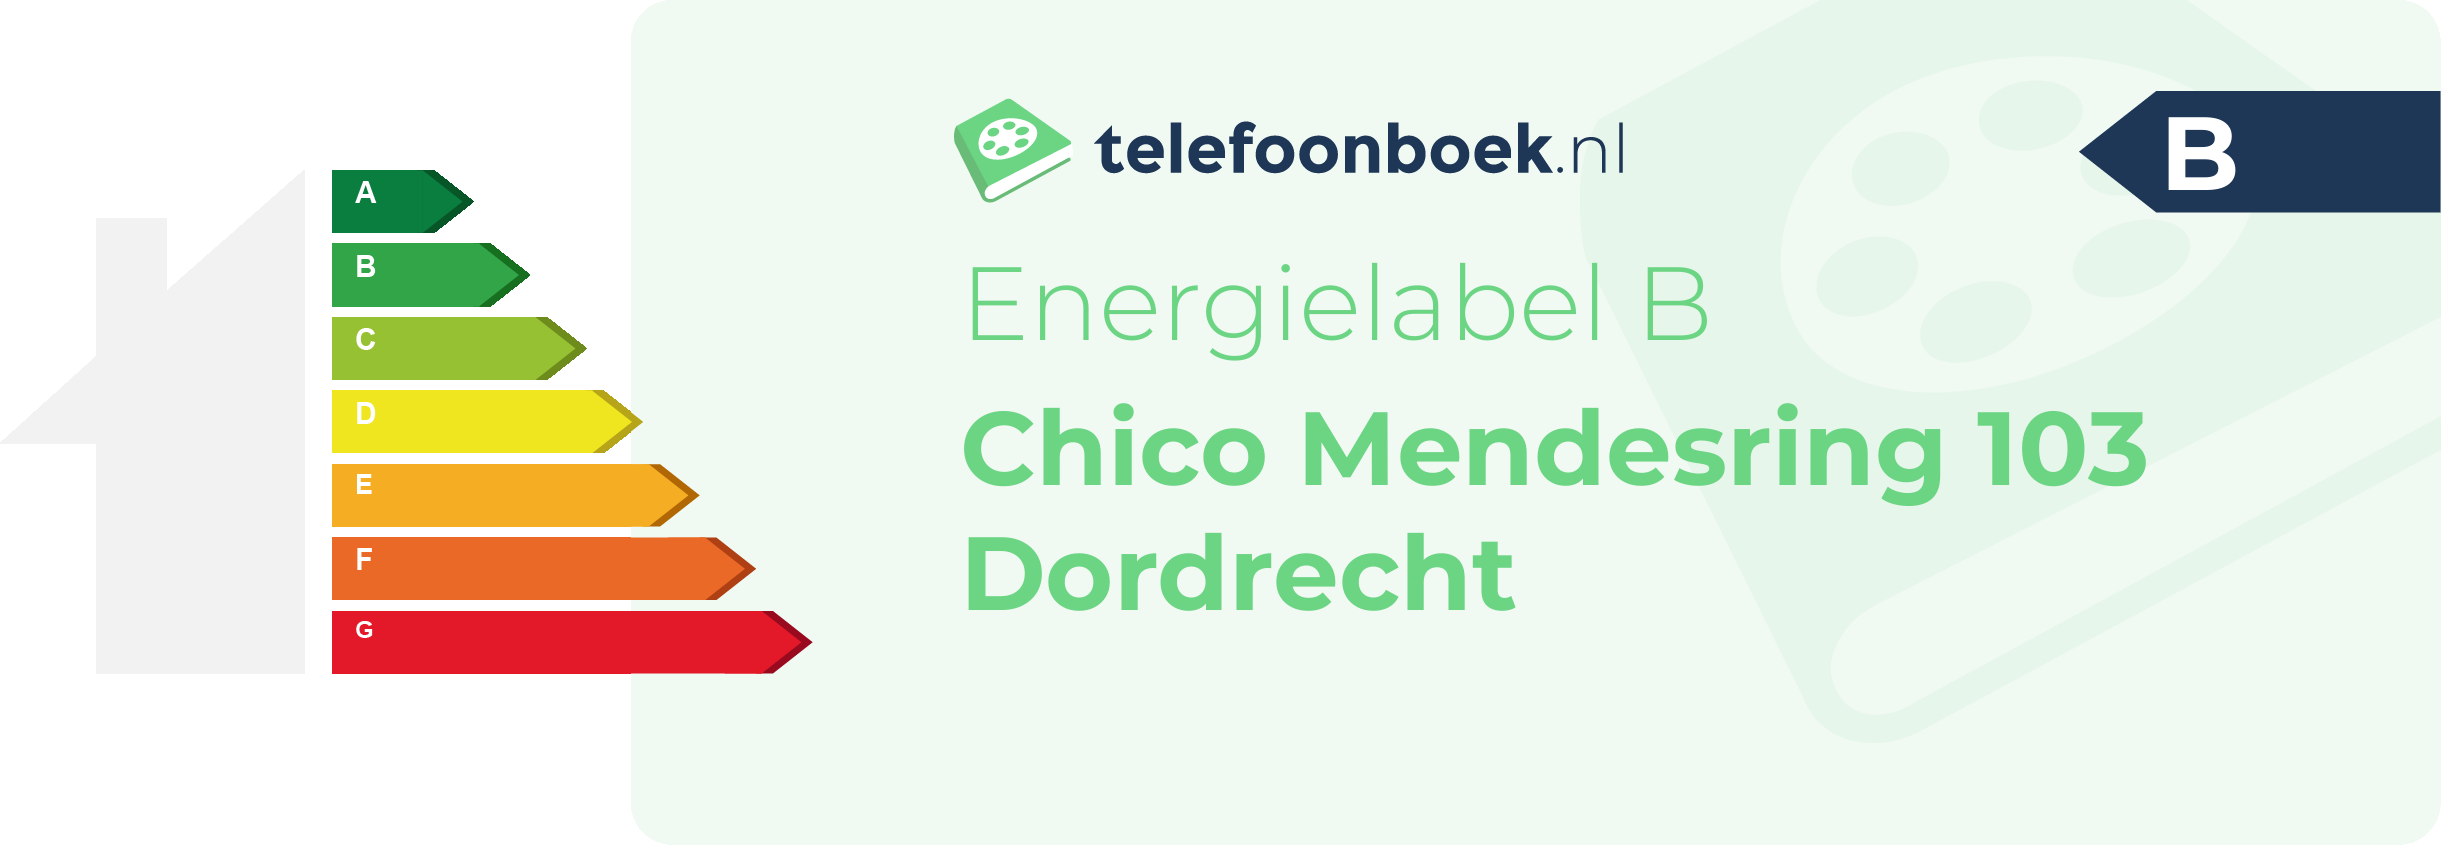 Energielabel Chico Mendesring 103 Dordrecht